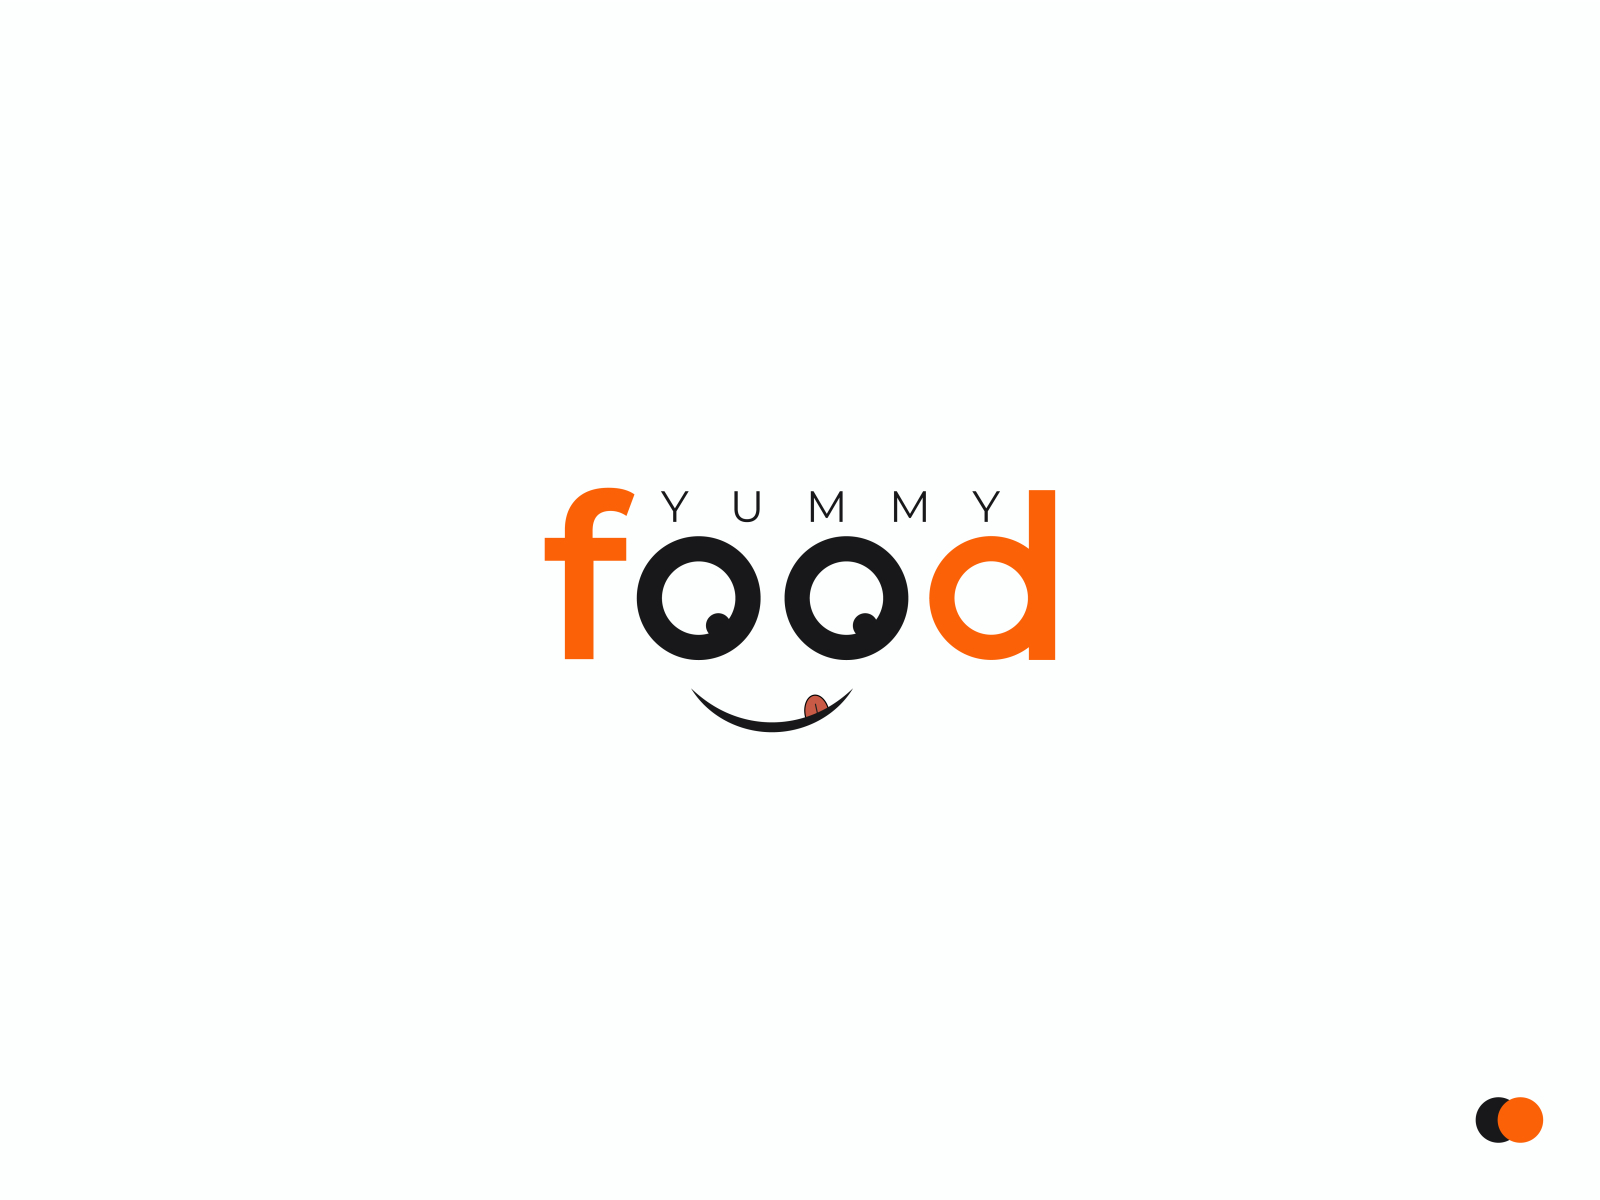 Logo Design Food